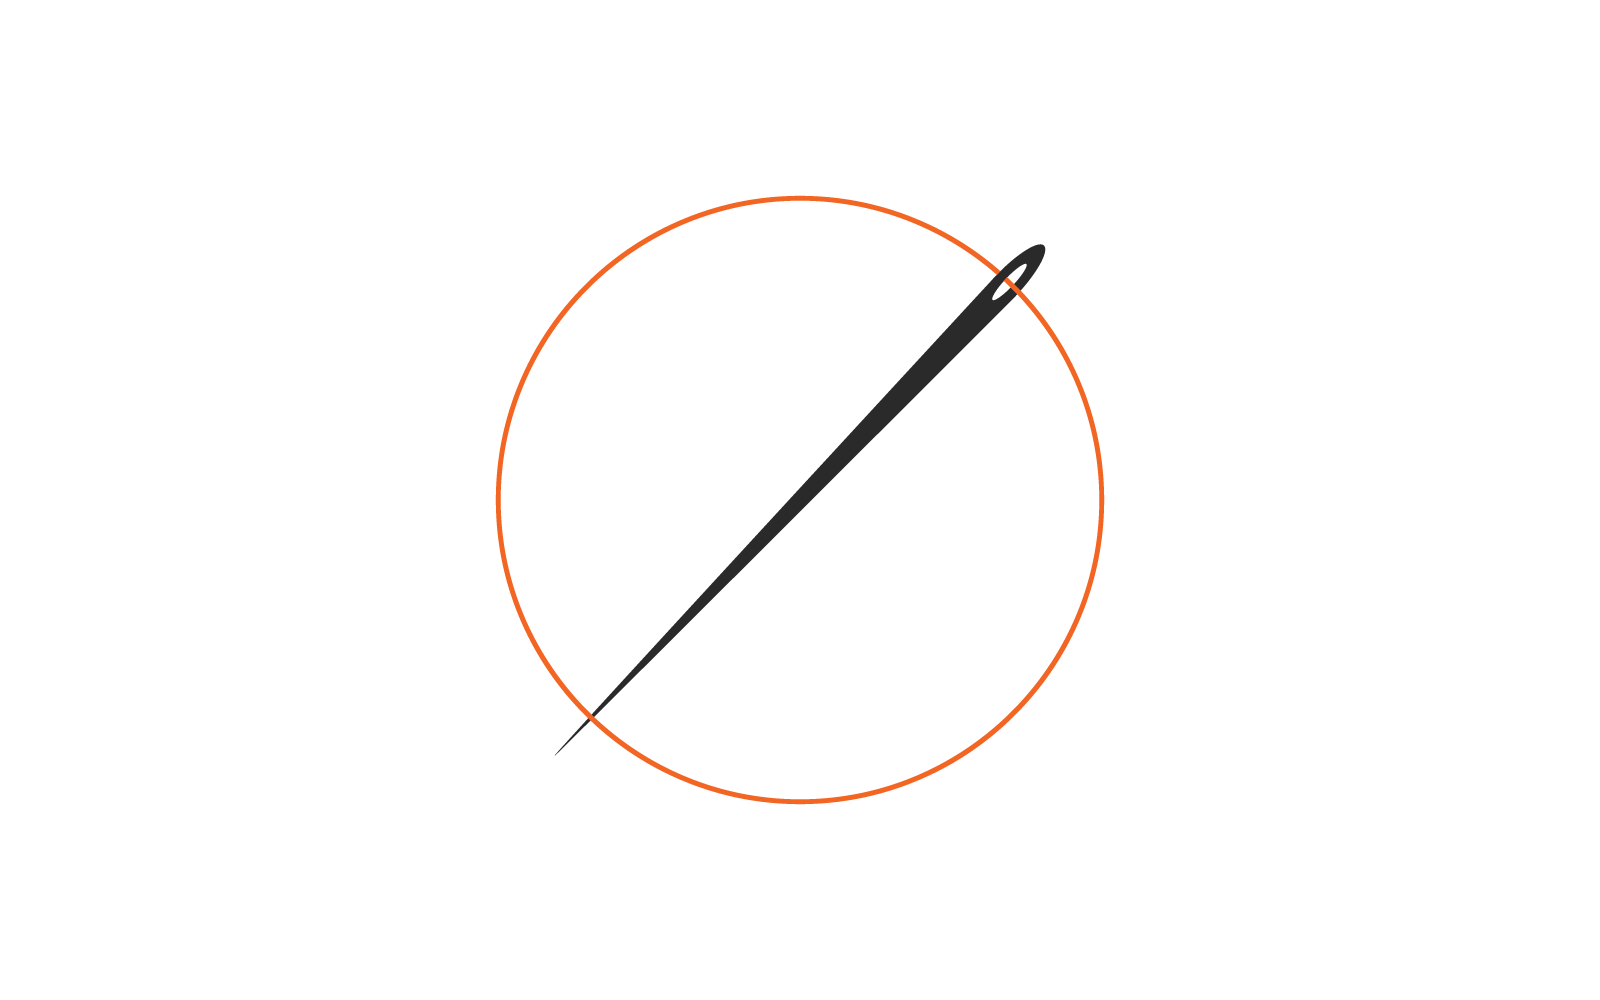 Thread needle illustration vector flat design